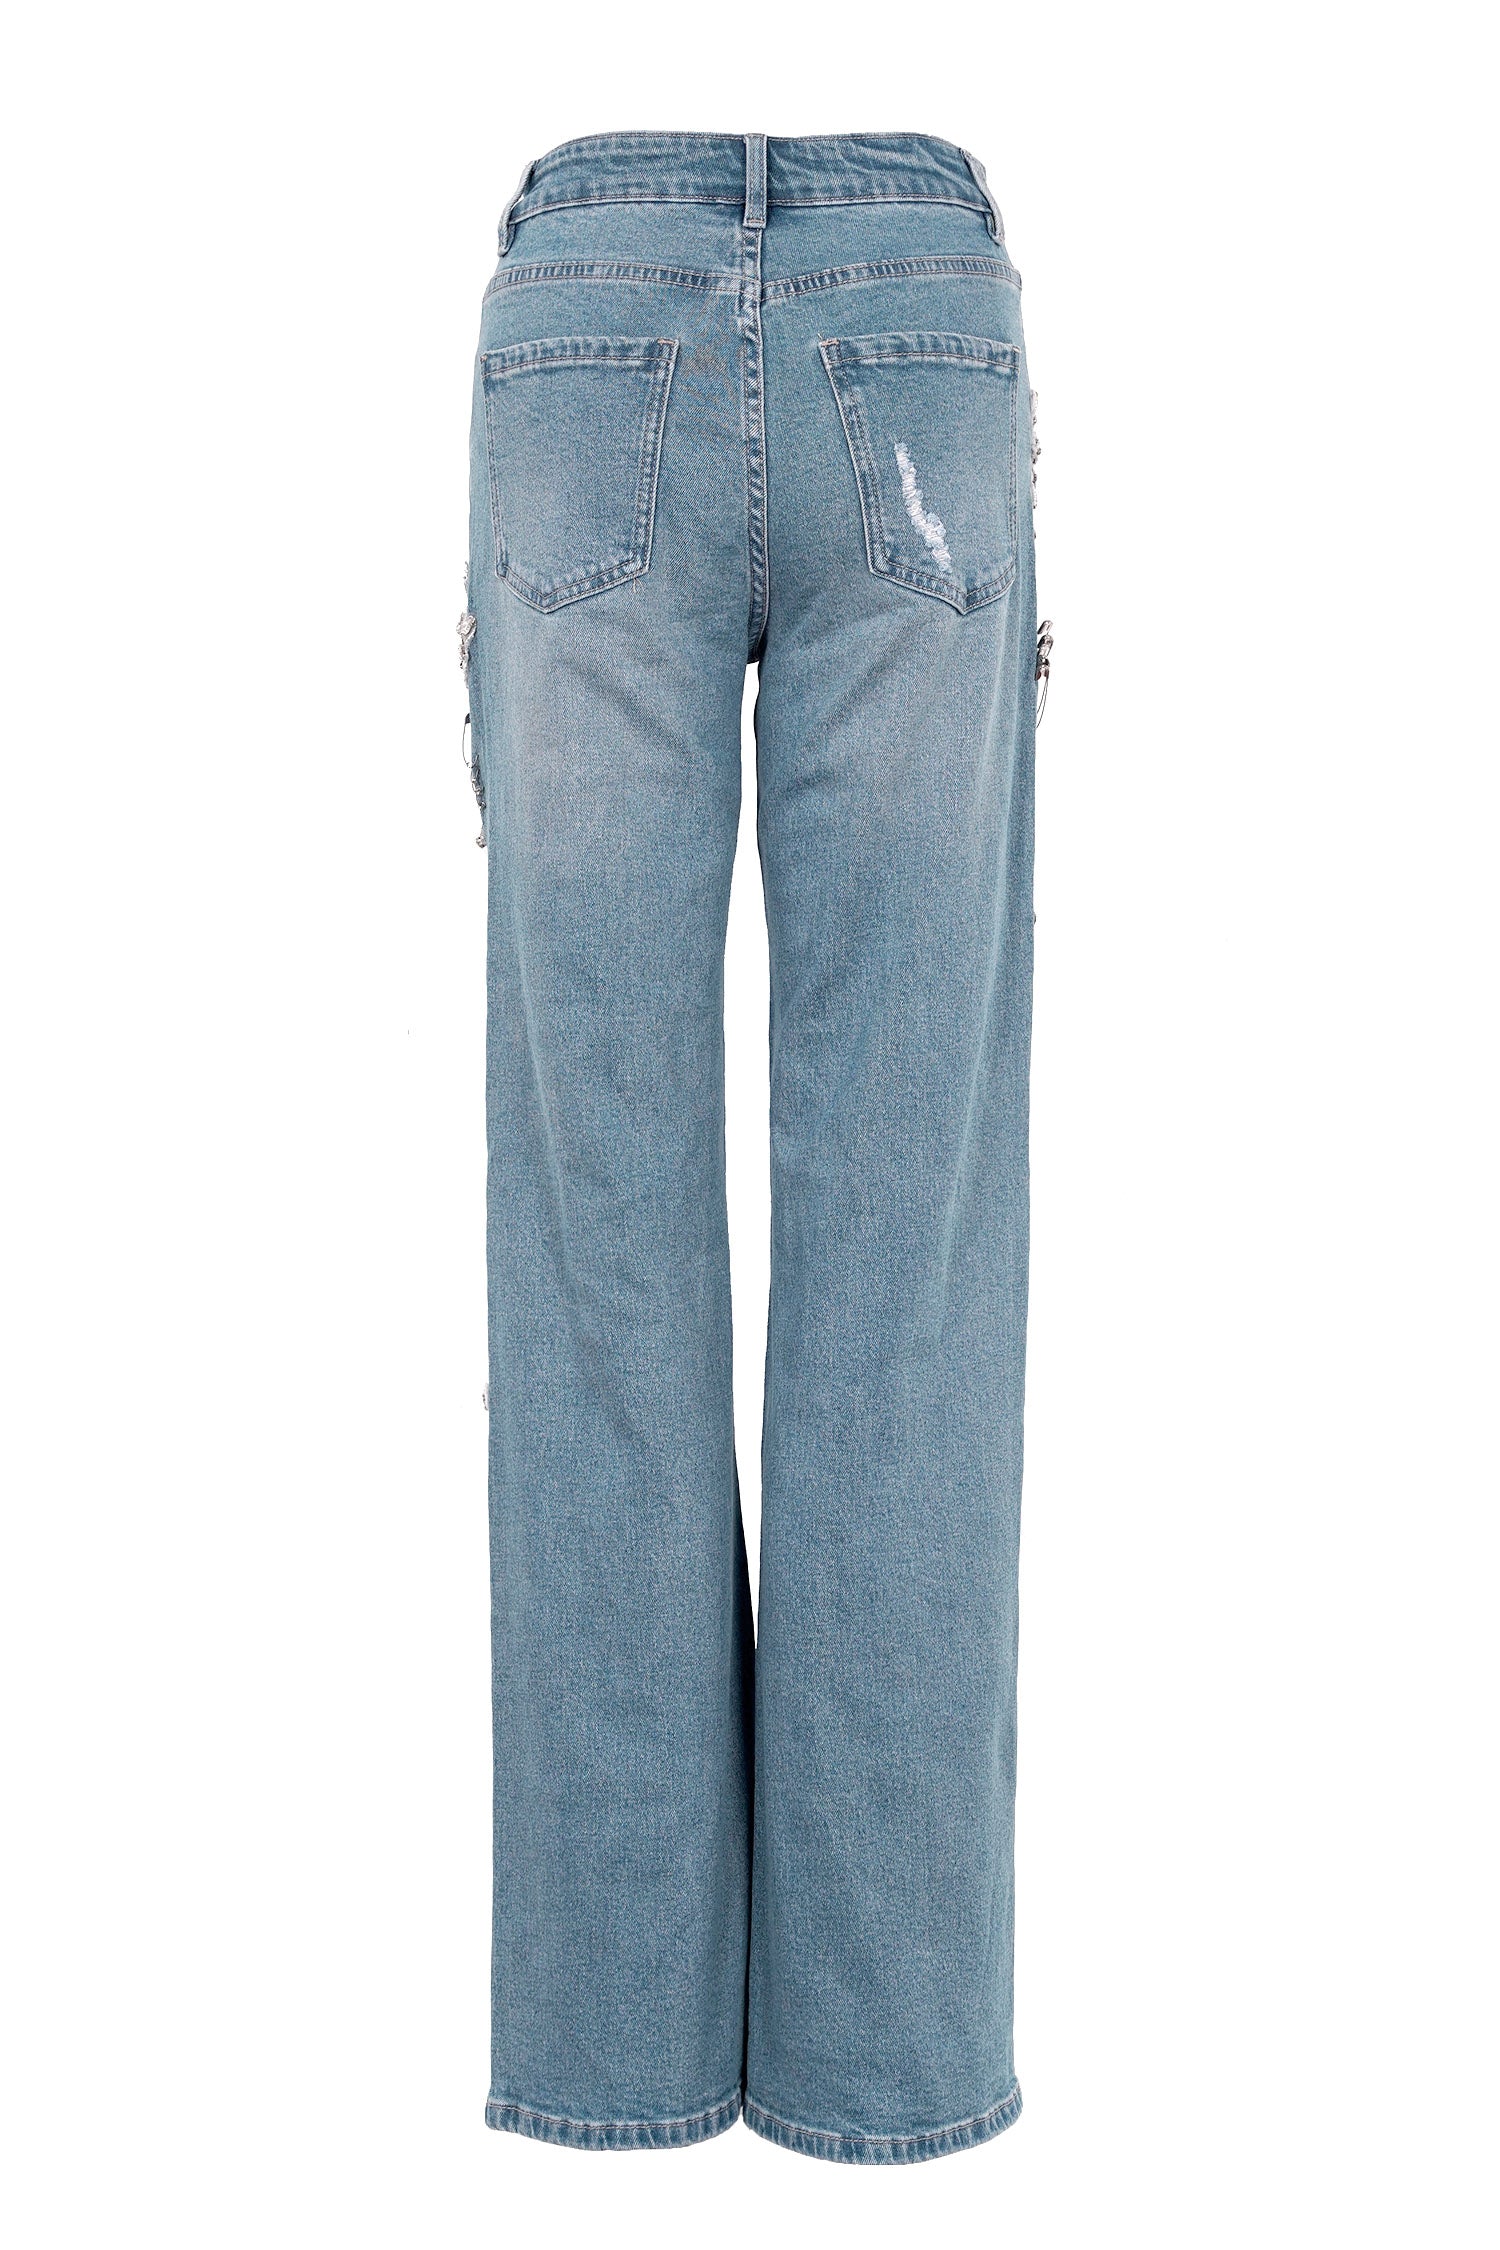 UrbanOG - Bethina Rhinestone Gem Distressed Denim Jeans - PANTS